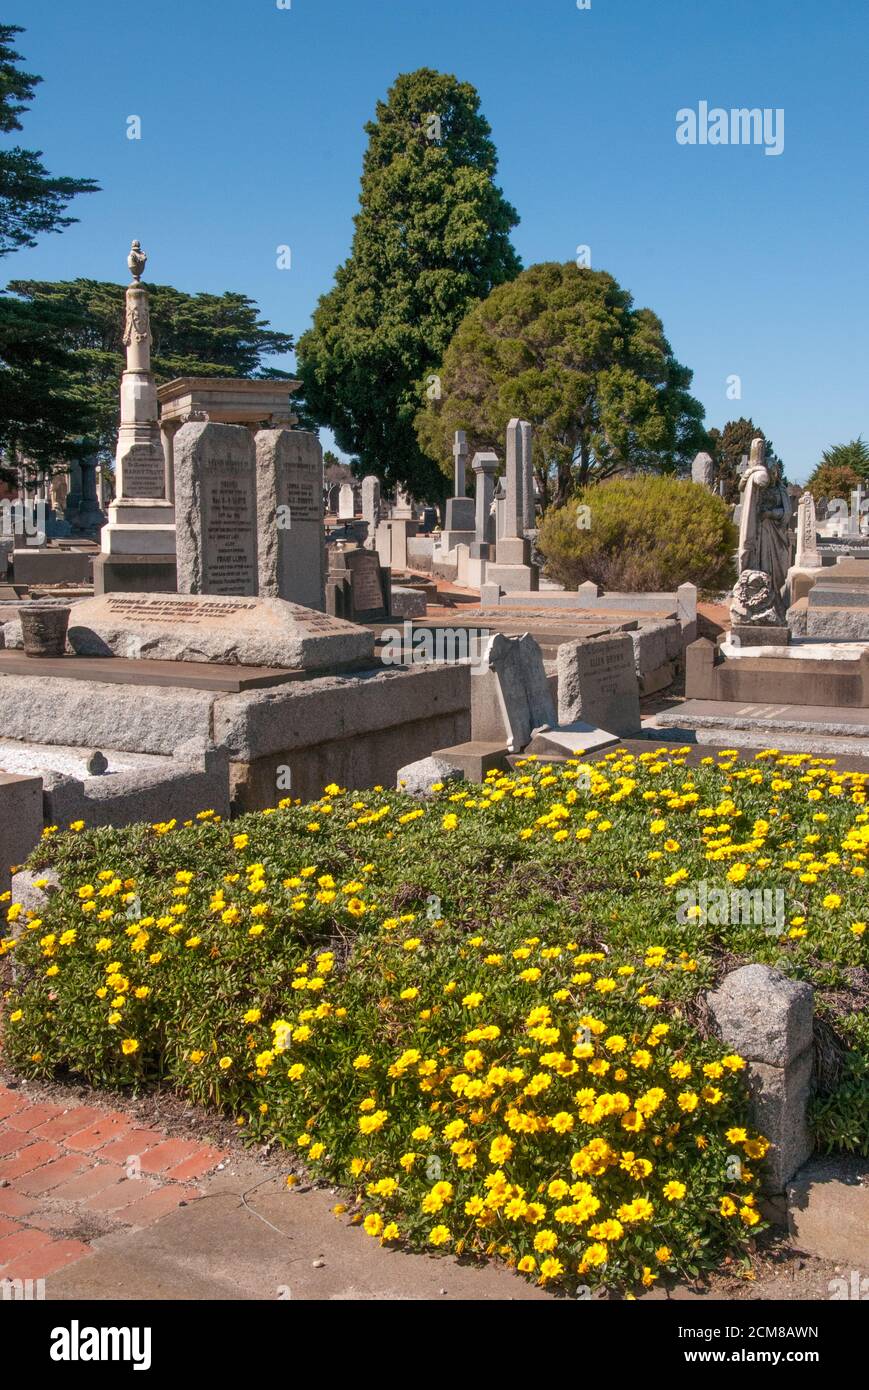 Fondato nel 1854, il cimitero generale di Brighton, in stile giardino, è uno dei cimiteri più antichi e significativi di Melbourne Foto Stock